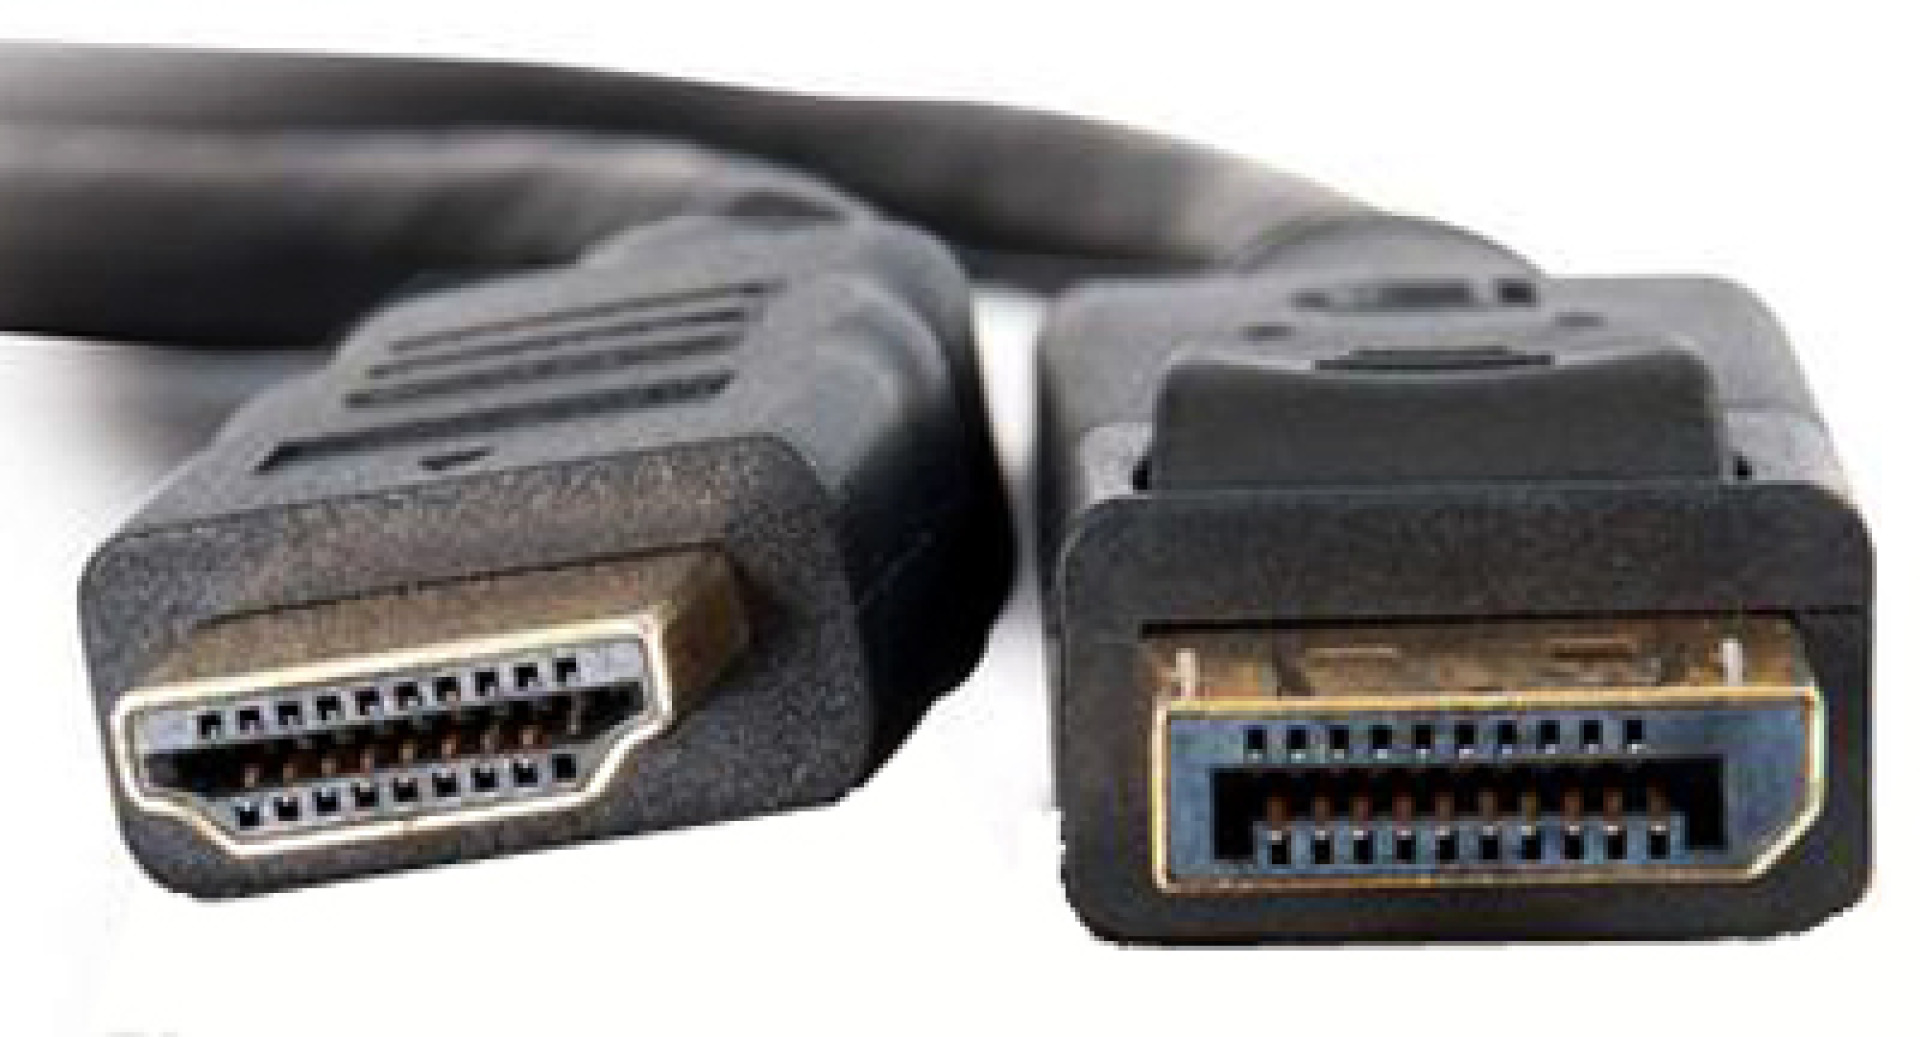 Konverterkabel DisplayPort 1.1 auf HDMI, schwarz, 2 m